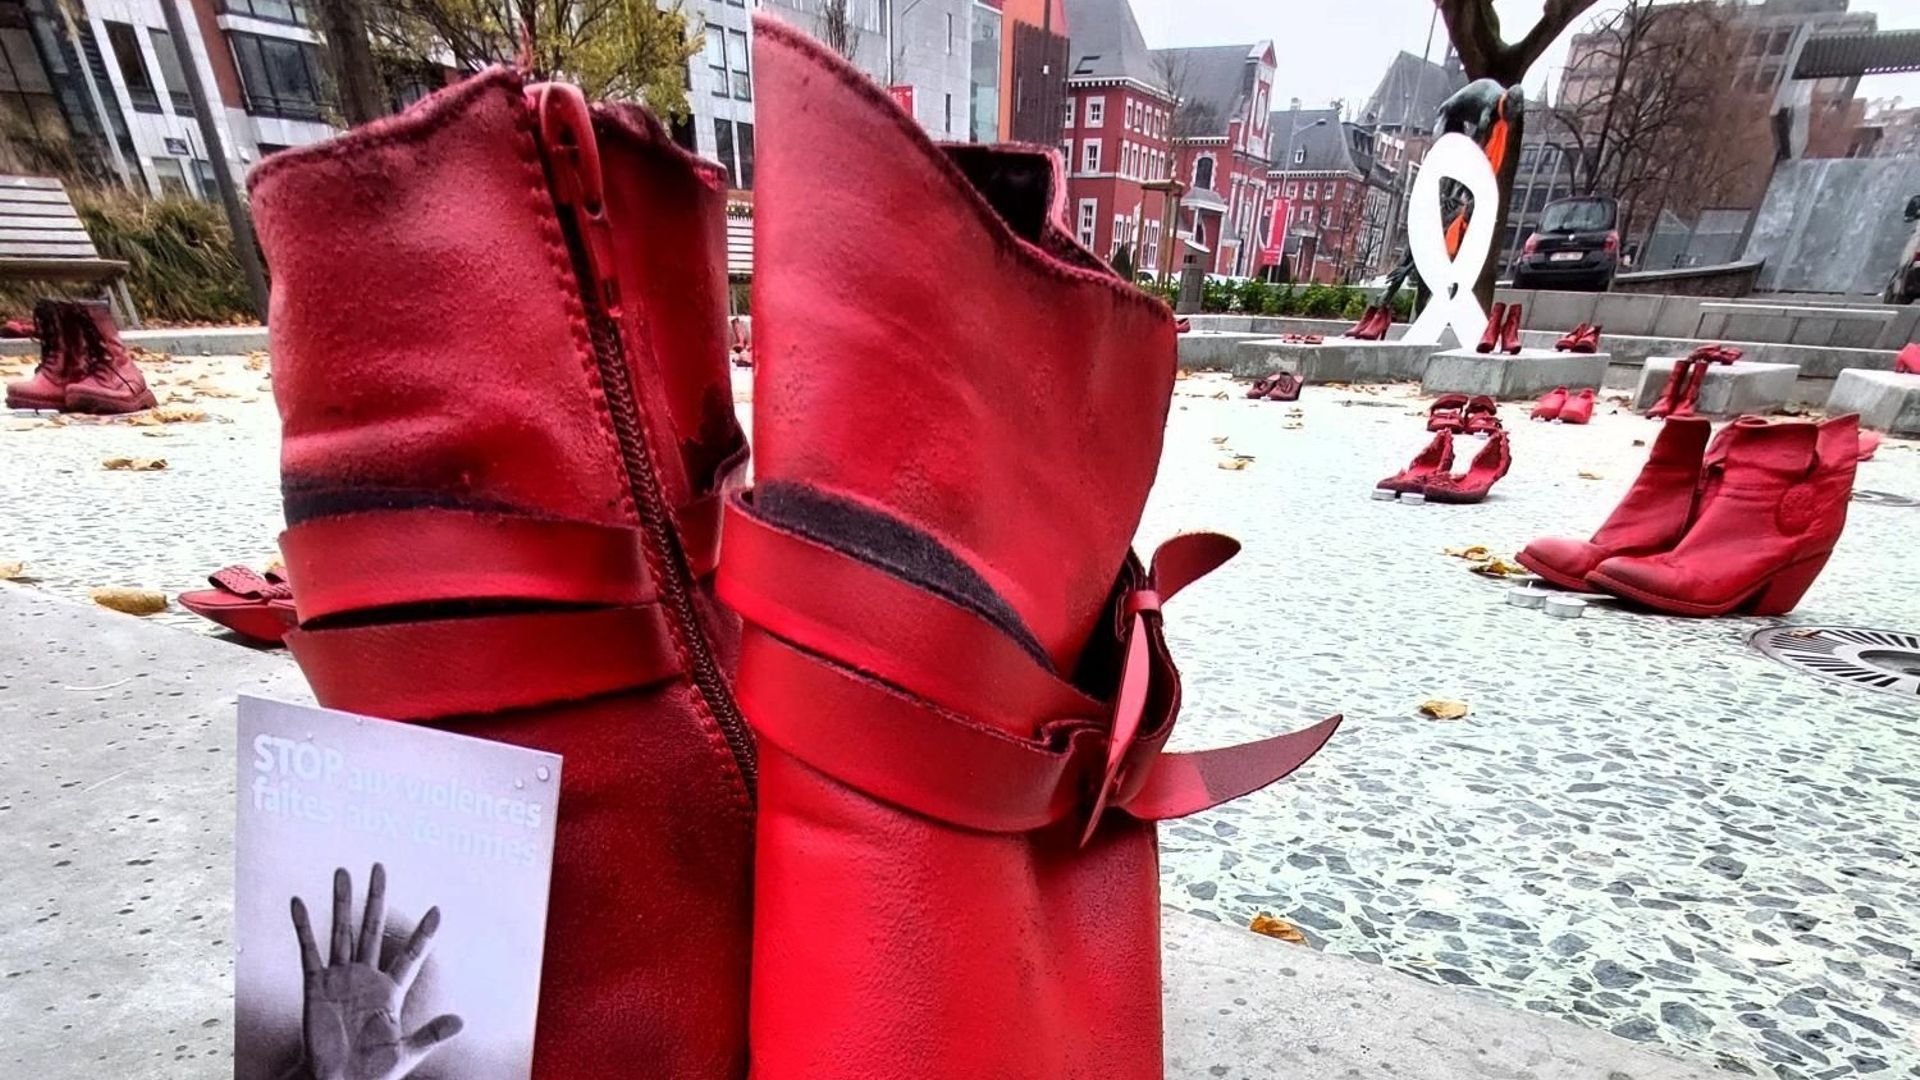 Les 43 paires de chaussures rouges exposées depuis ce jeudi après-midi Place des Carmes à Liège représentent les victimes de féminicide depuis 2020 en Belgique.